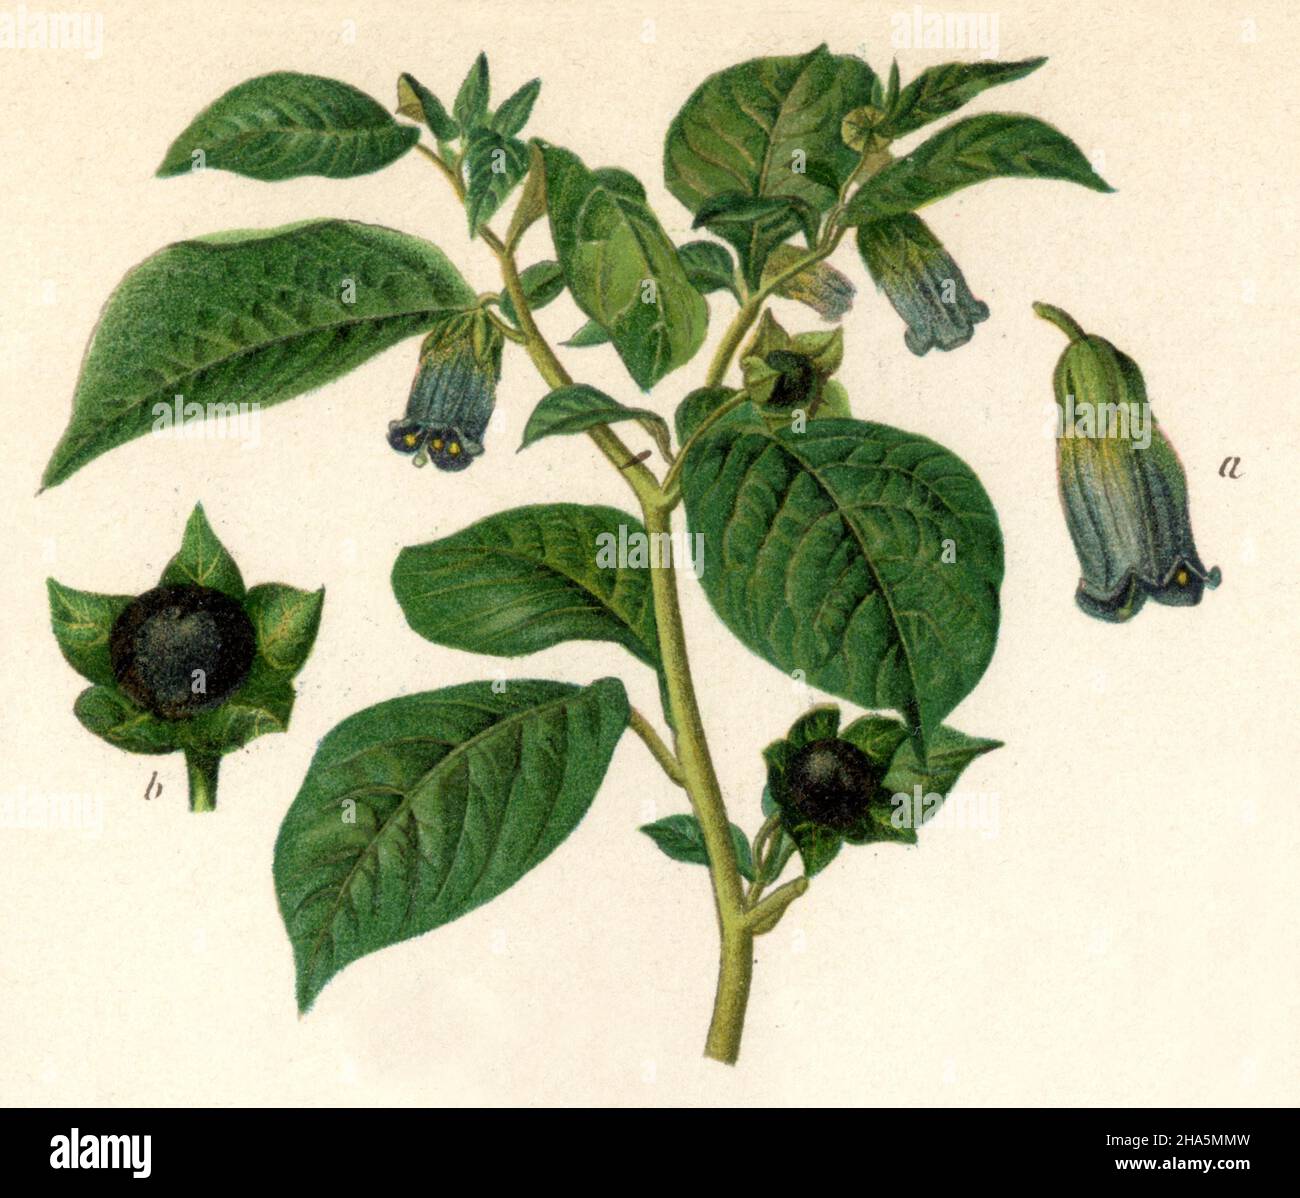 belladonna Atropa belladonna,  (encyclopedia, 1898) Stock Photo